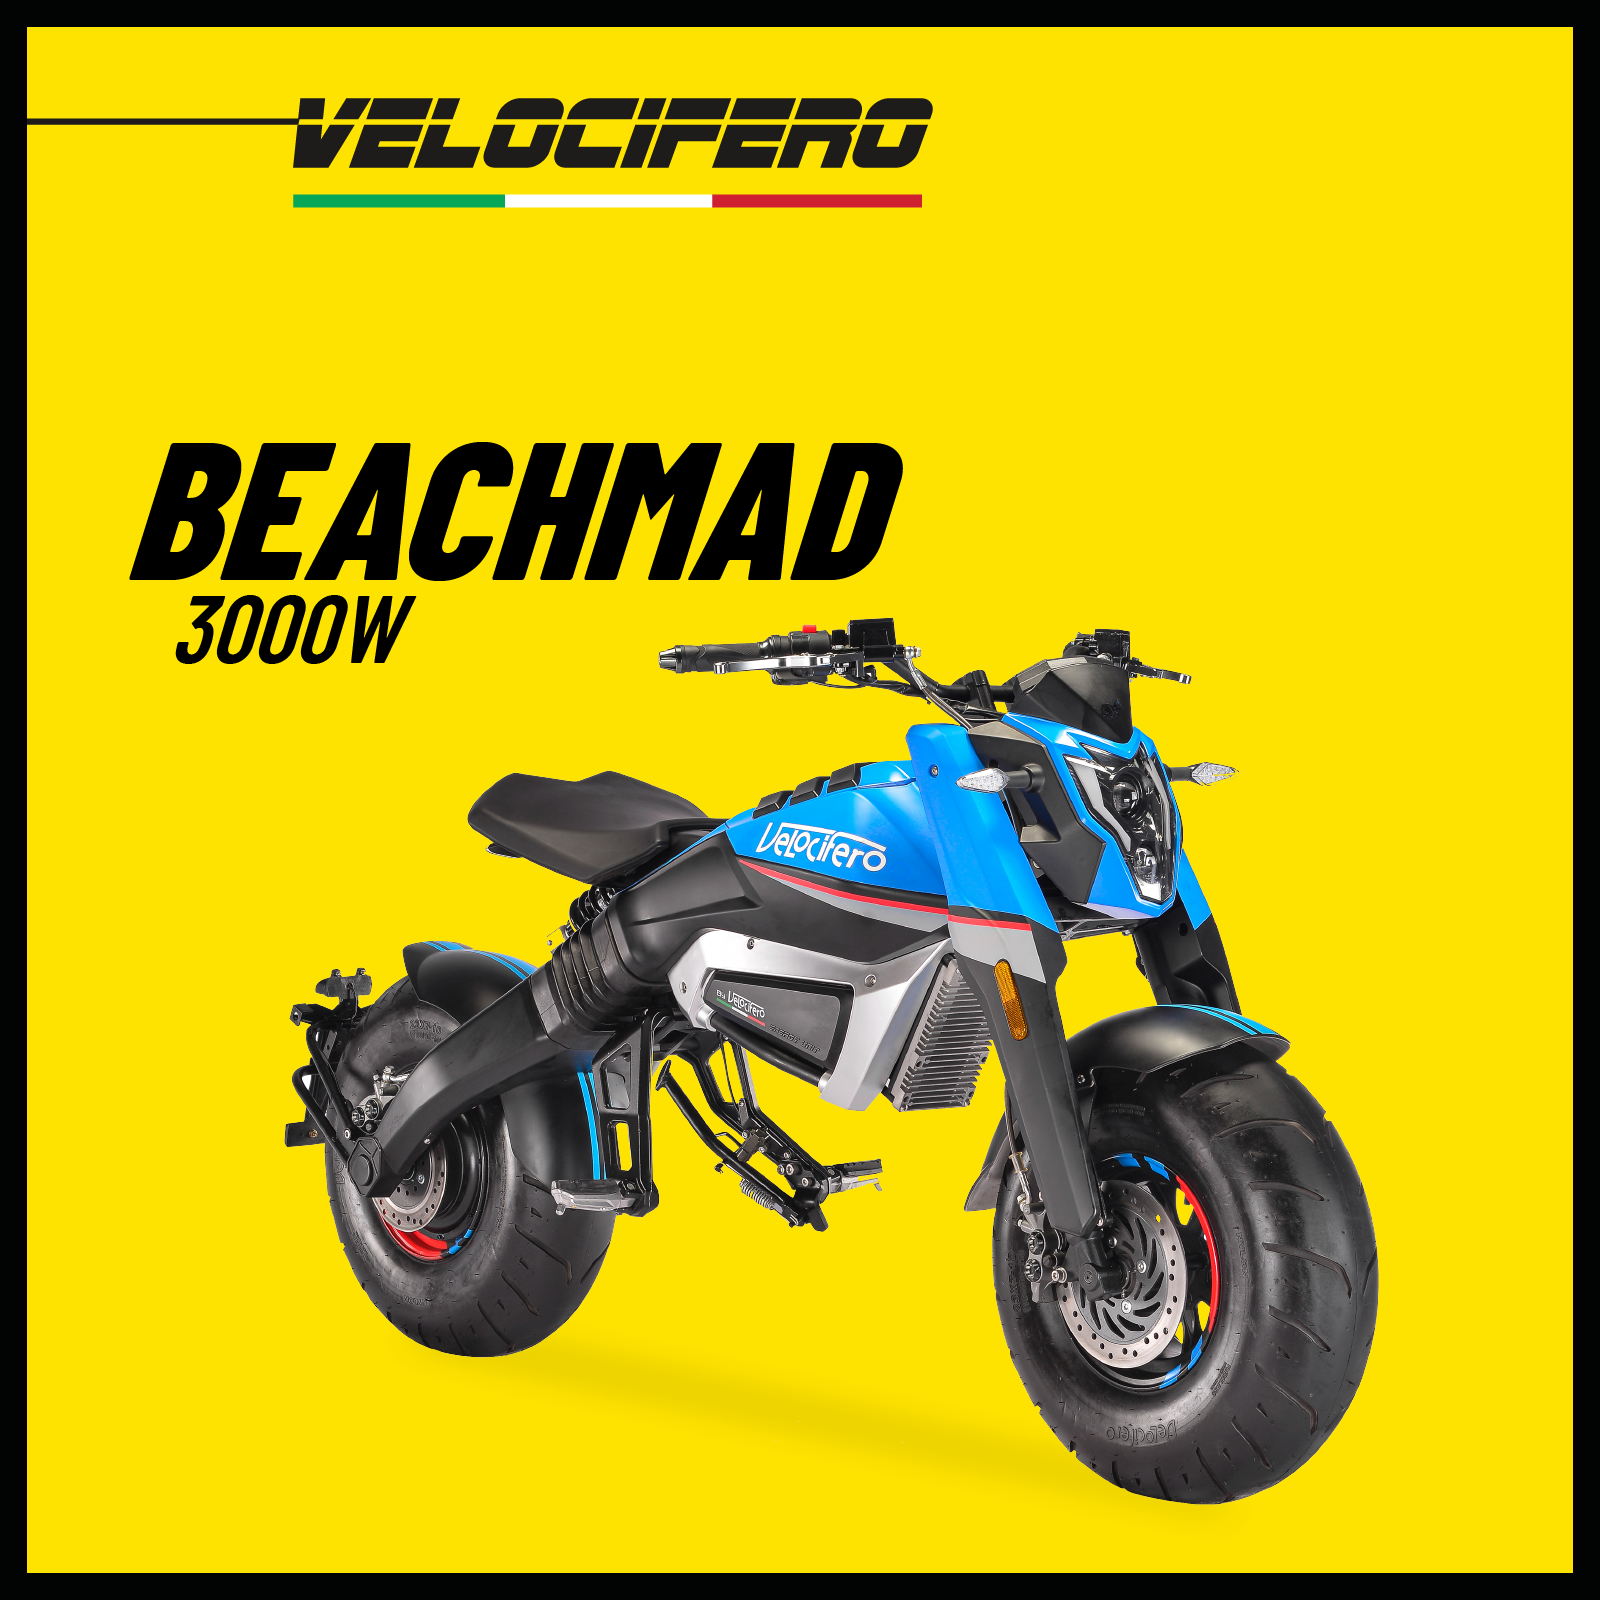 Электромотоцикл BACHMAD внедорожный пляжный мотоцикл мощностью 3000 Вт голубой